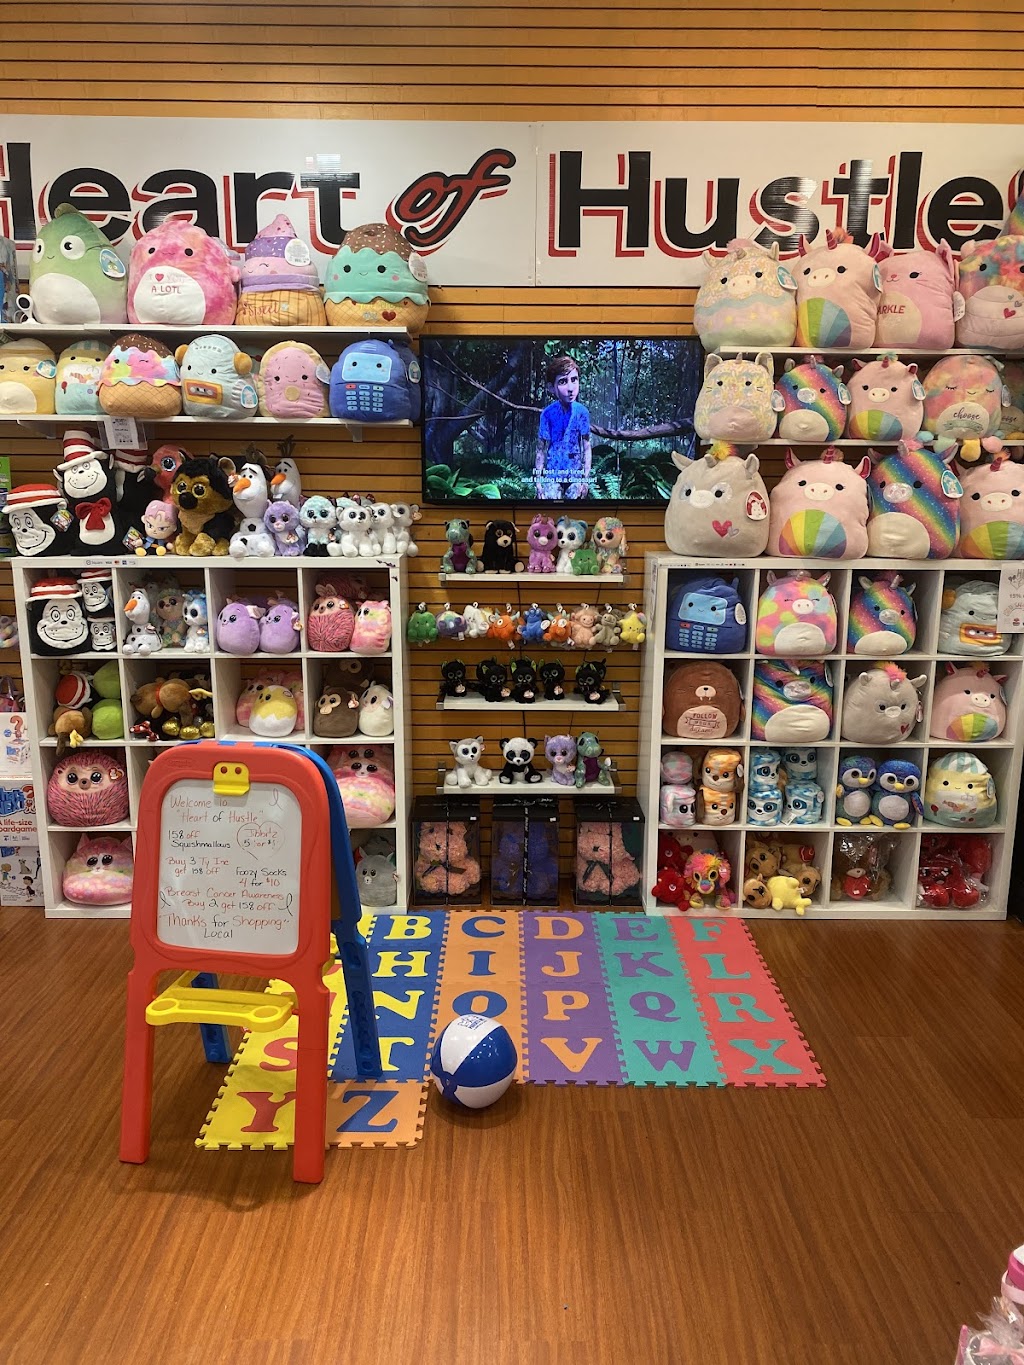 Heart of Hustle “Gift Shop” | 3849 S Delsea Dr F07, Vineland, NJ 08360 | Phone: (856) 315-5399